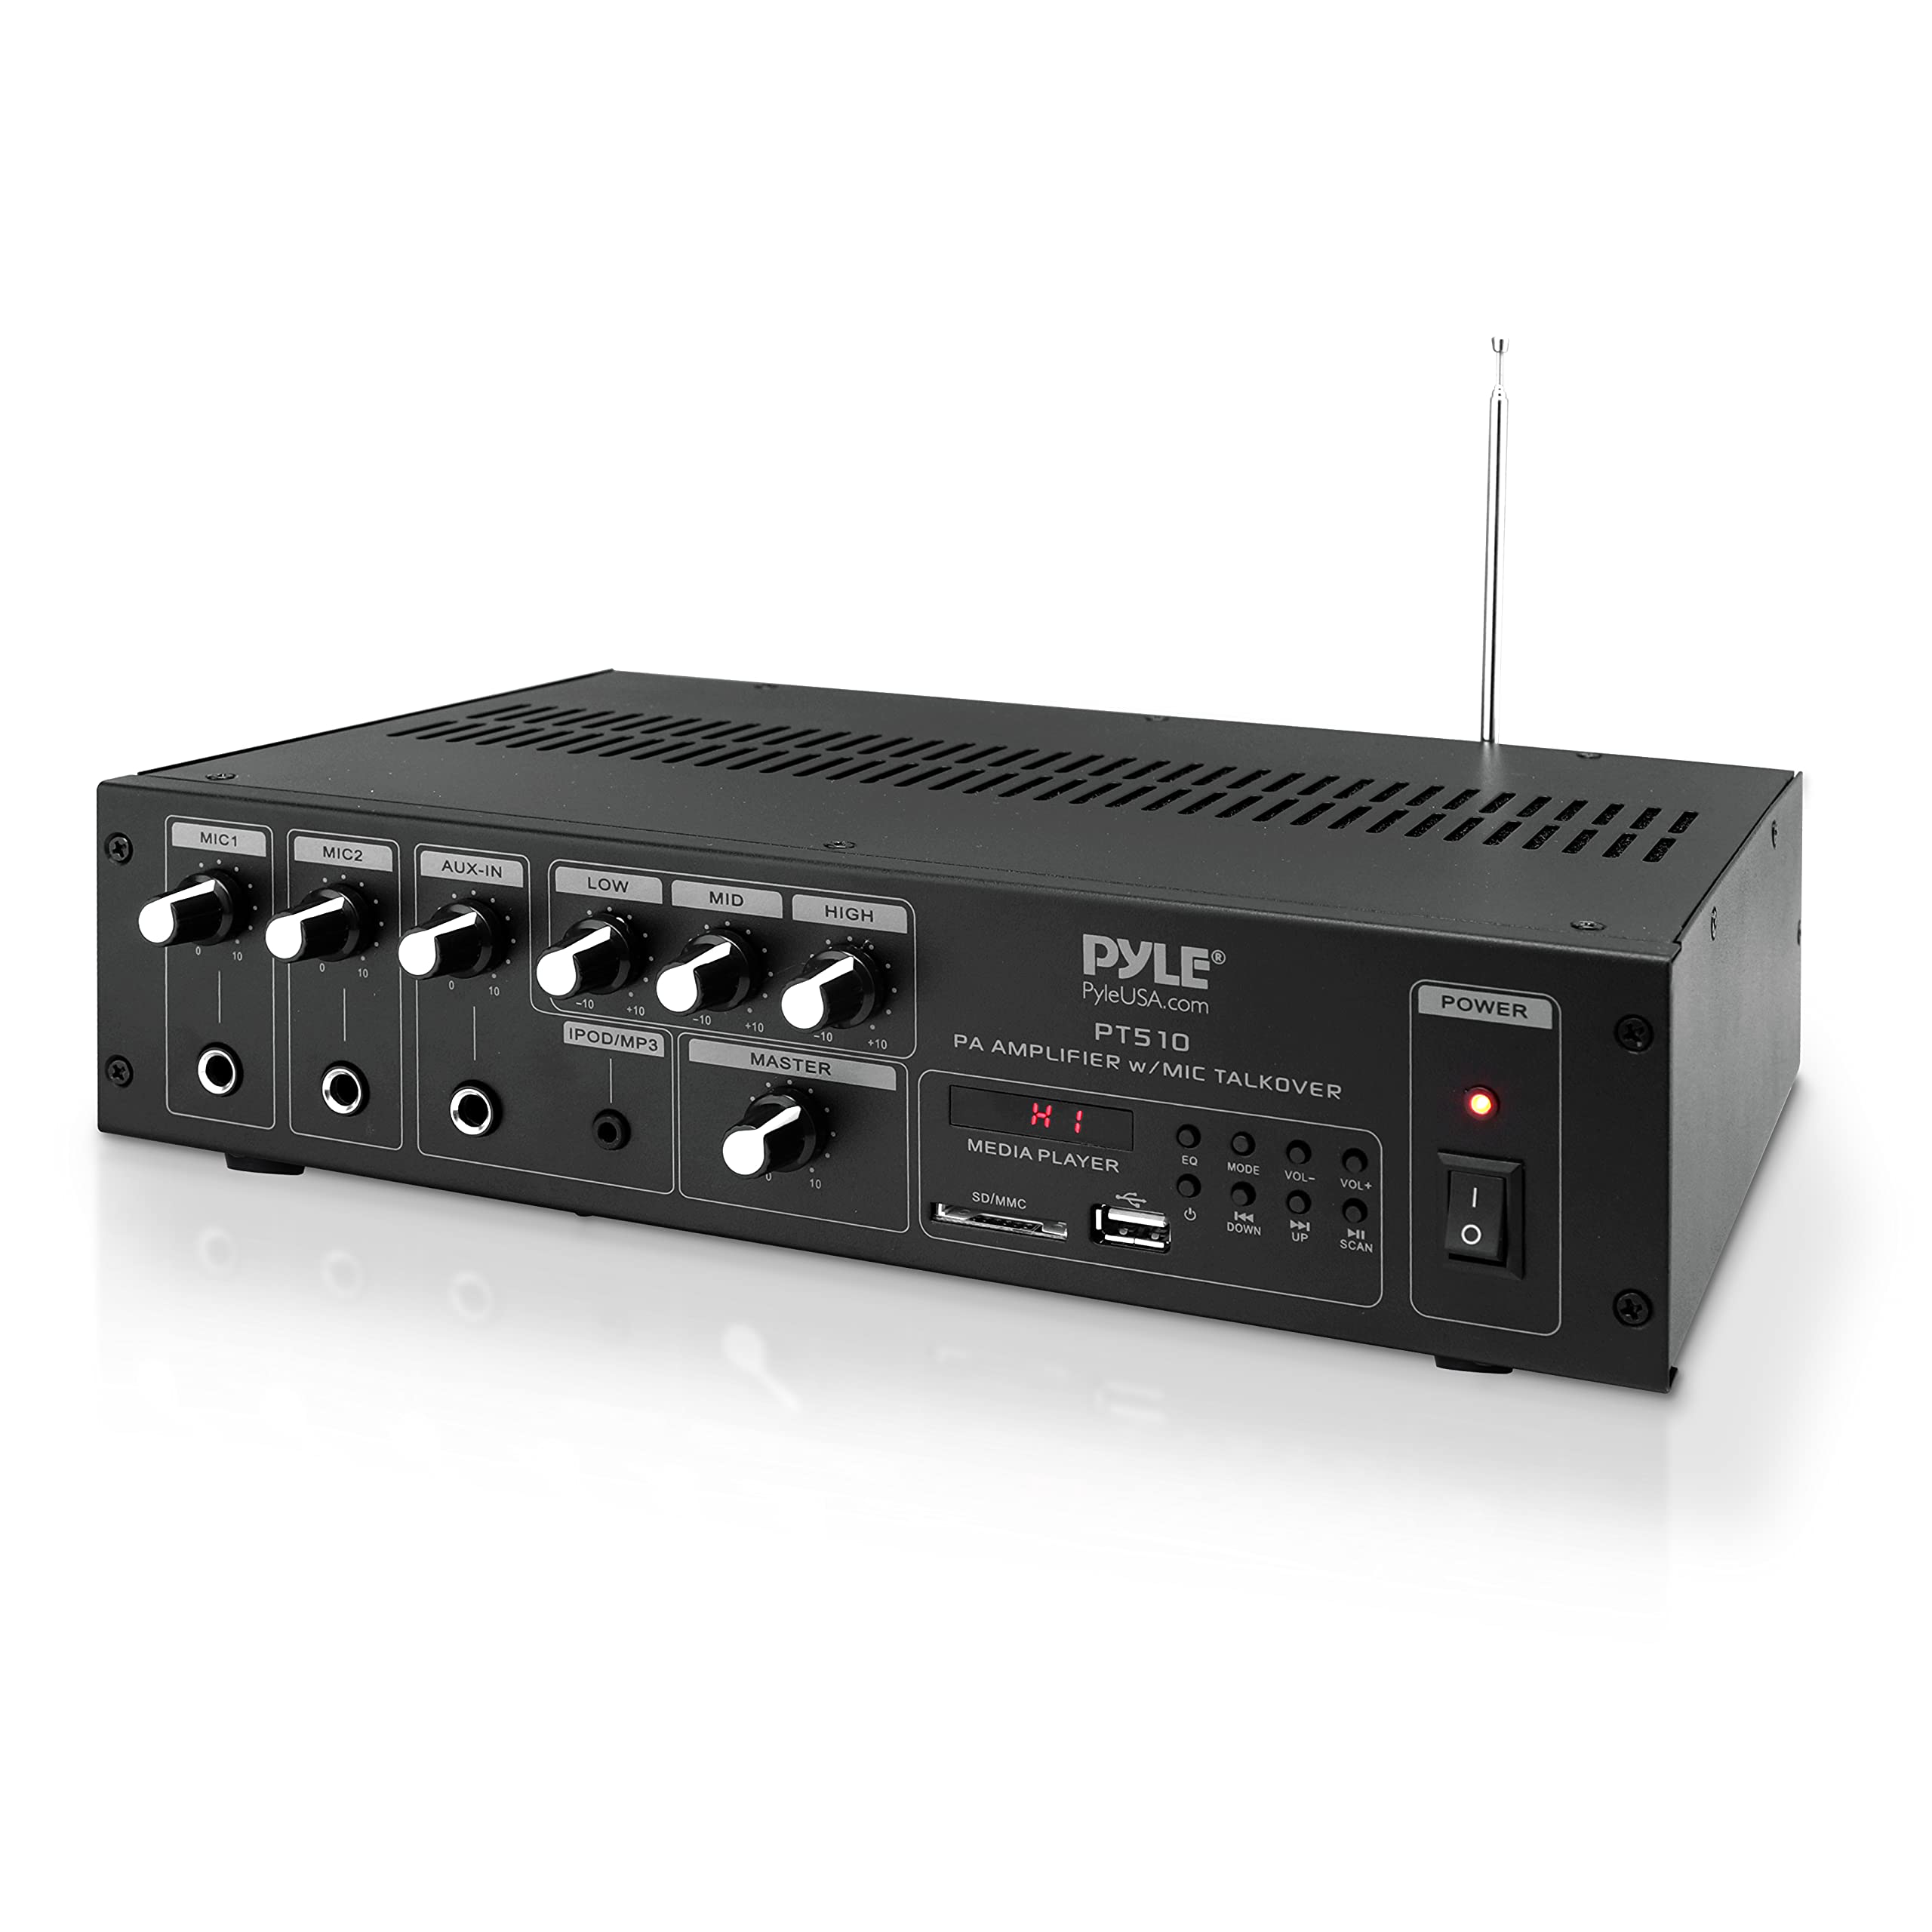  Pyle ホームオーディオパワーアンプミキサー - 240W 5チャンネルサウンドステレオエンターテイメントレシーバーボックス、FMラジオアンテナ、USB、RCA...